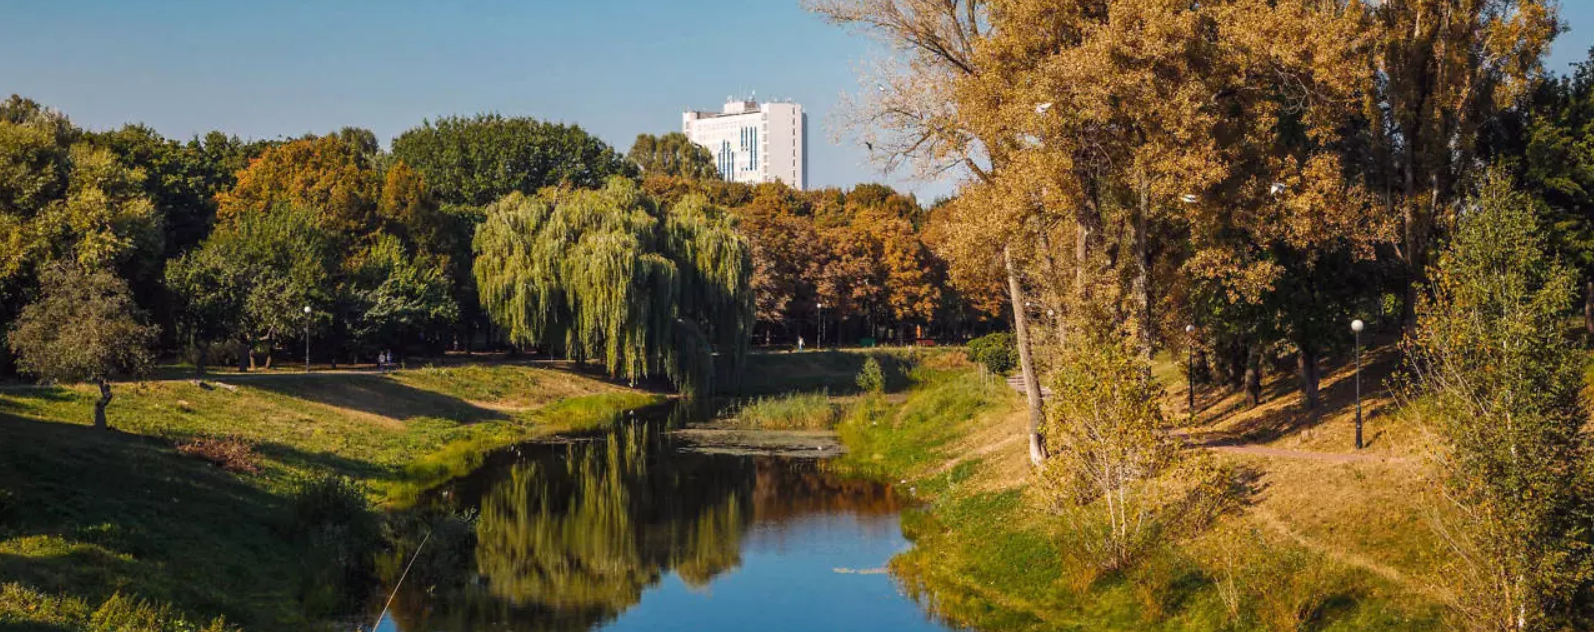 Киевзеленстрой анонсировал реконструкцию 7 столичных парков (адреса)